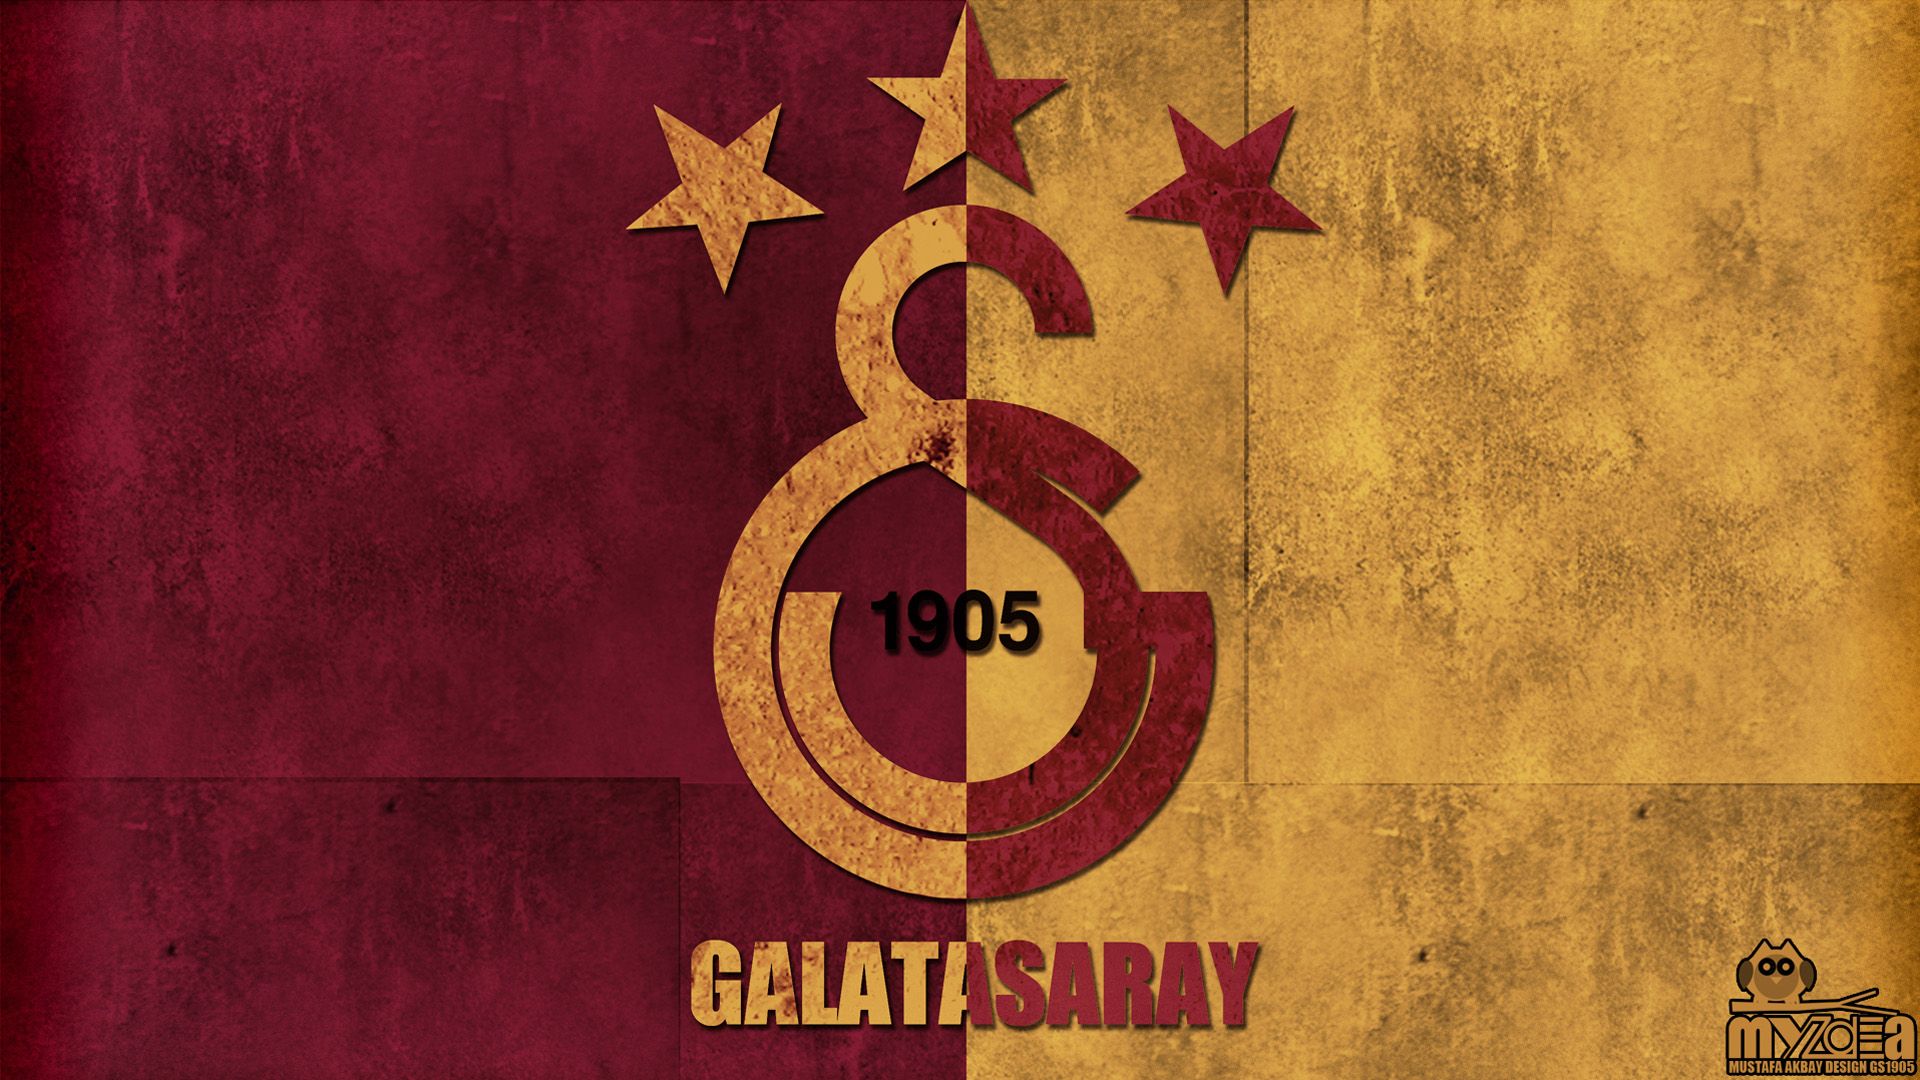 Galatasaray Wallpaper Pzg25 Buckshee Here At